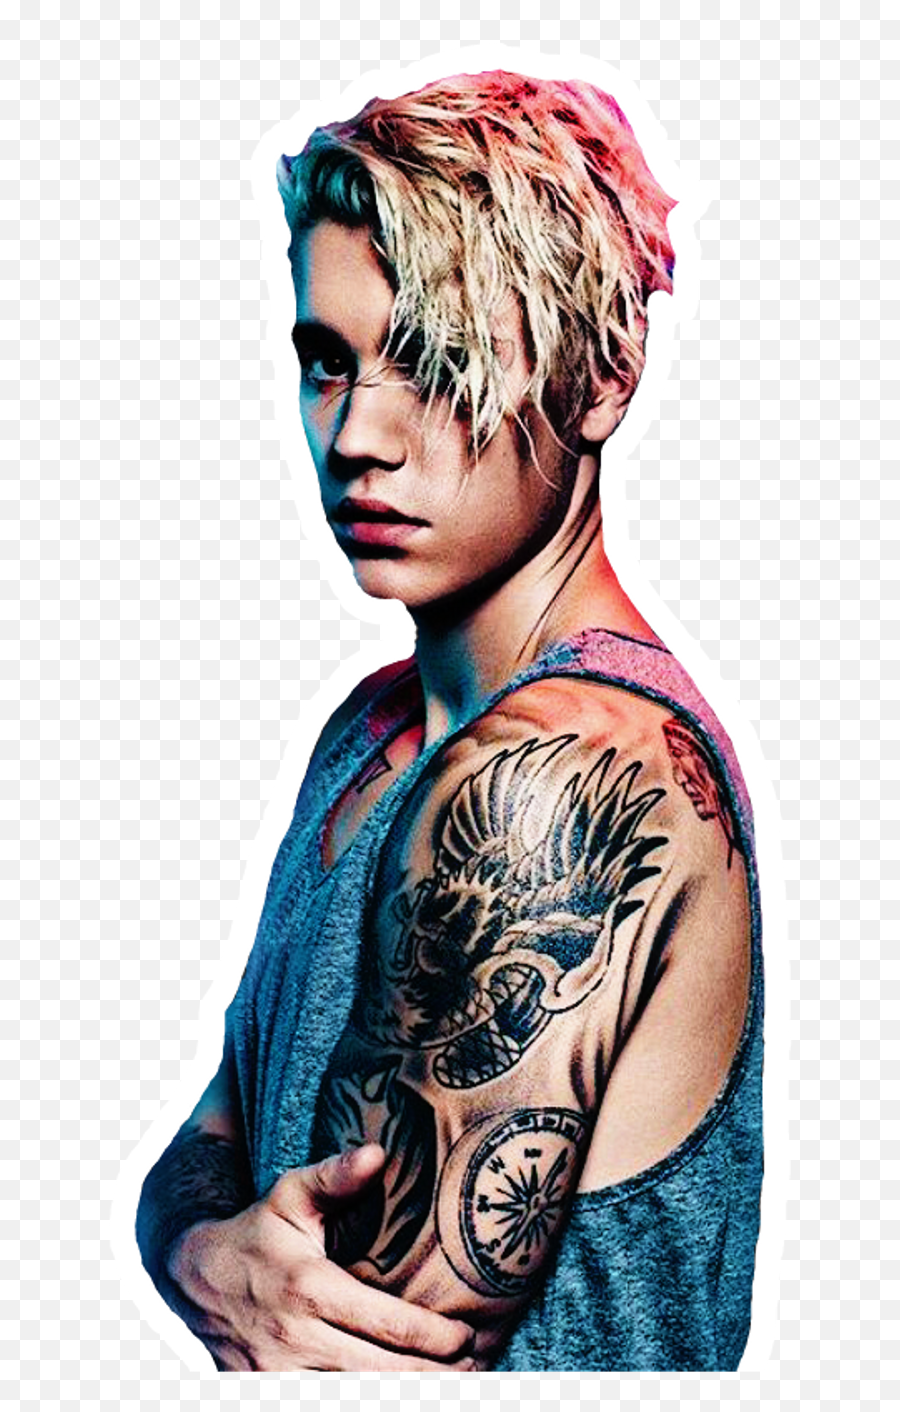 Justin Bieber Pic Hd 2016 Clipart - Full Hd Justin Bieber All Emoji,Justin Bieber Emojis